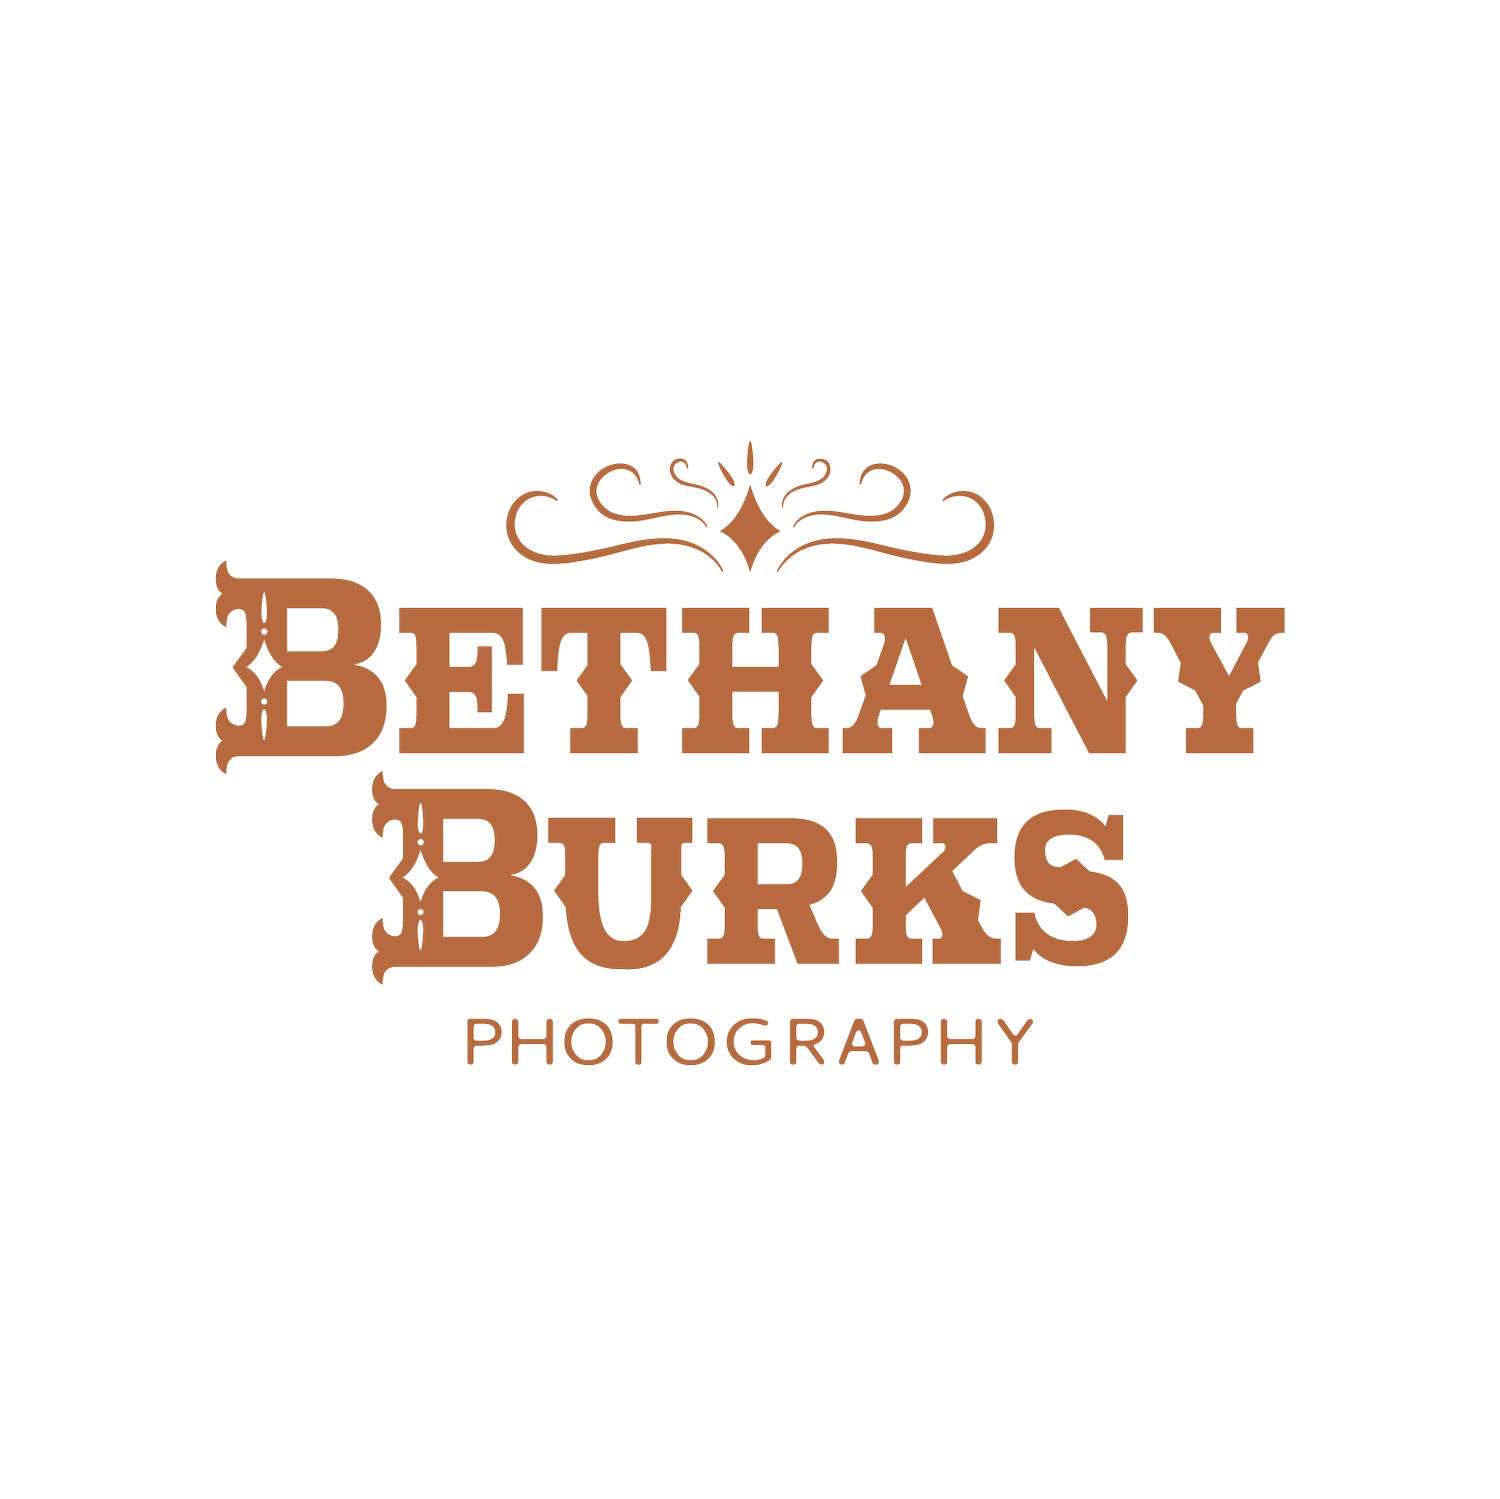 Bethany Burks Photography